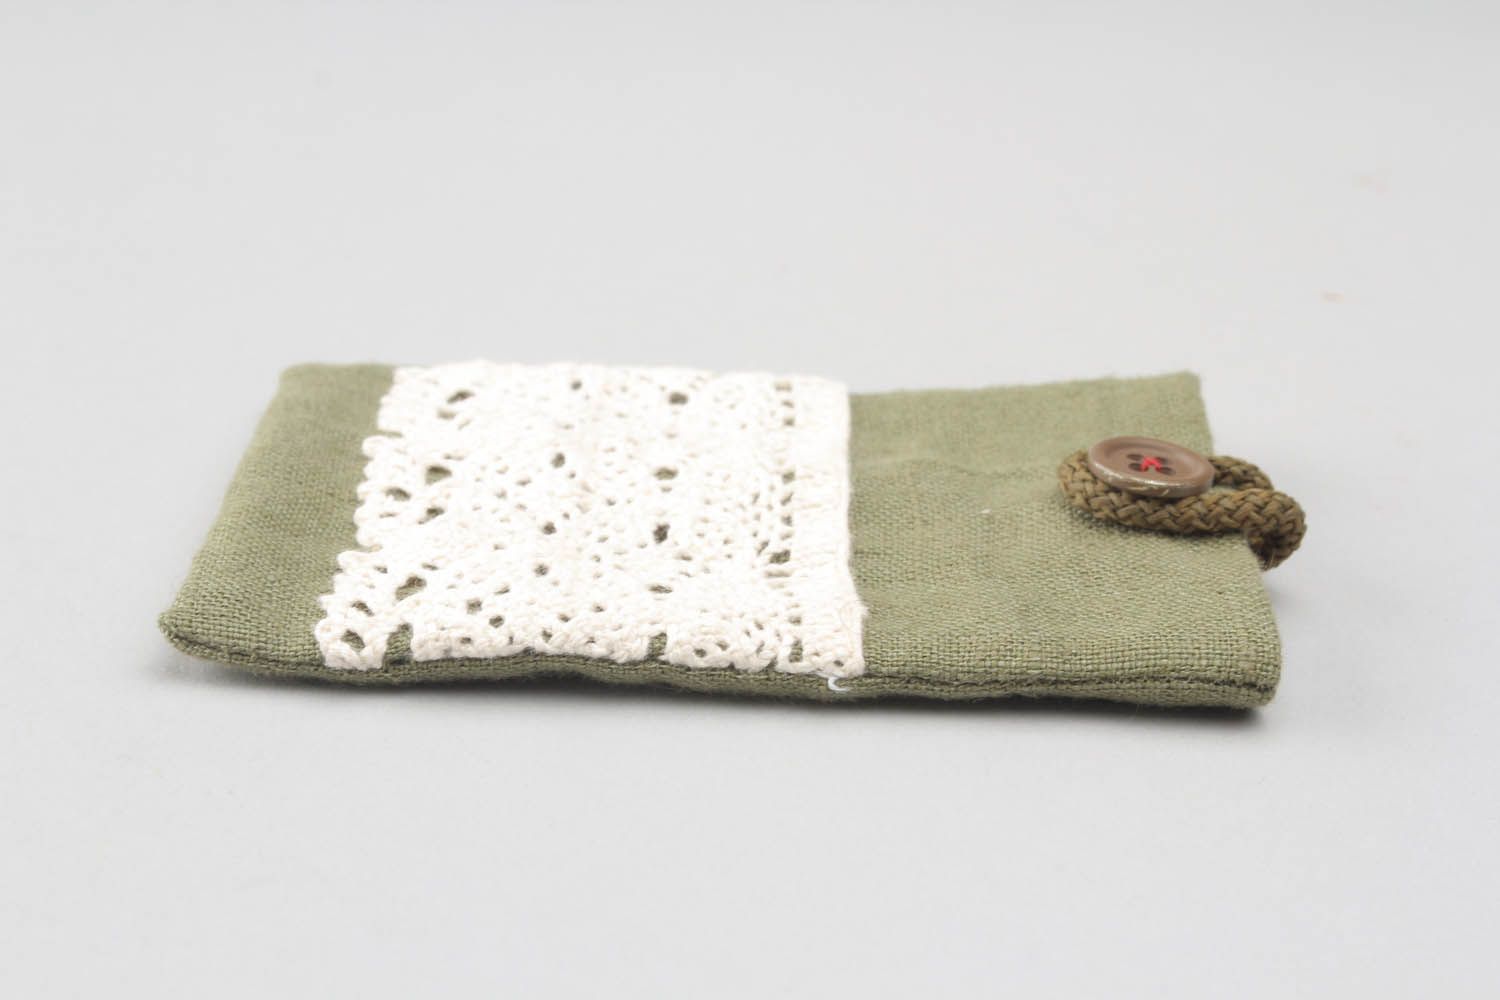 Housse-chaussette pour téléphone en tissu vert faite main photo 3